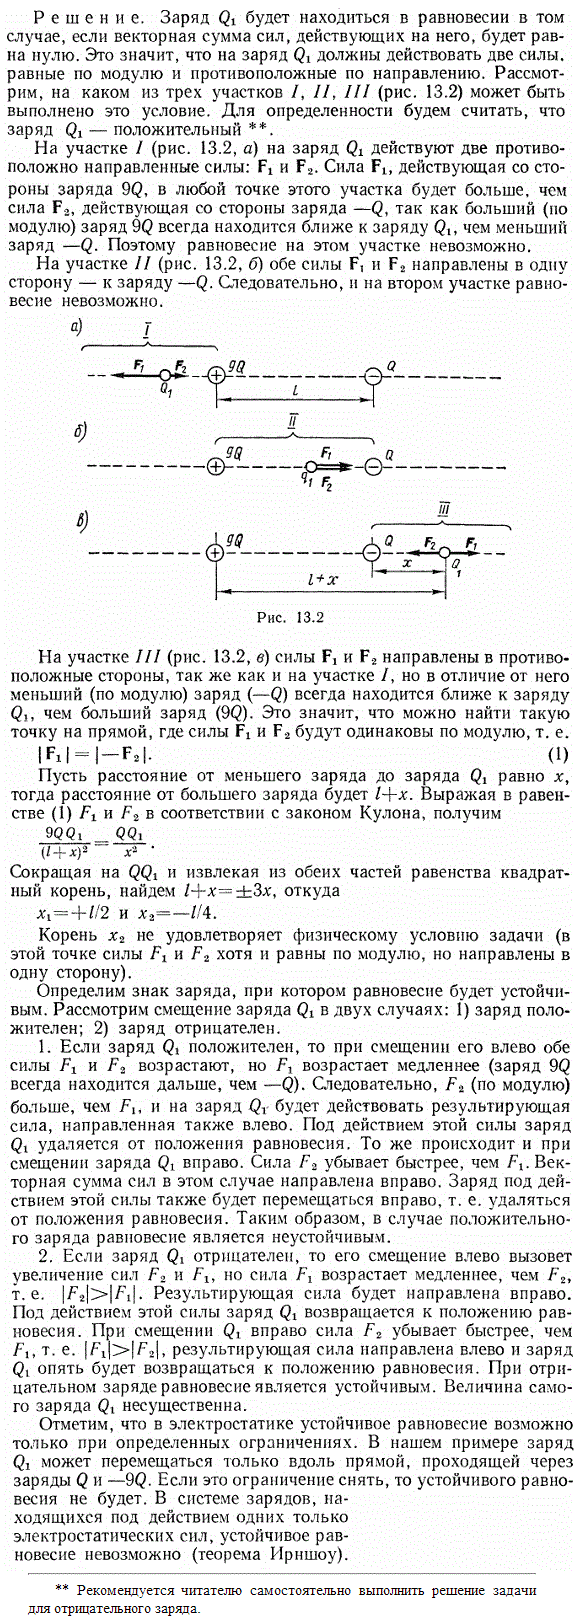 Два заряда 9Q и-Q закреплены на расстоянии l=50 см друг от друга. Третий заряд Q1 может перемещаться только вдоль прямой, проходящей через заряды